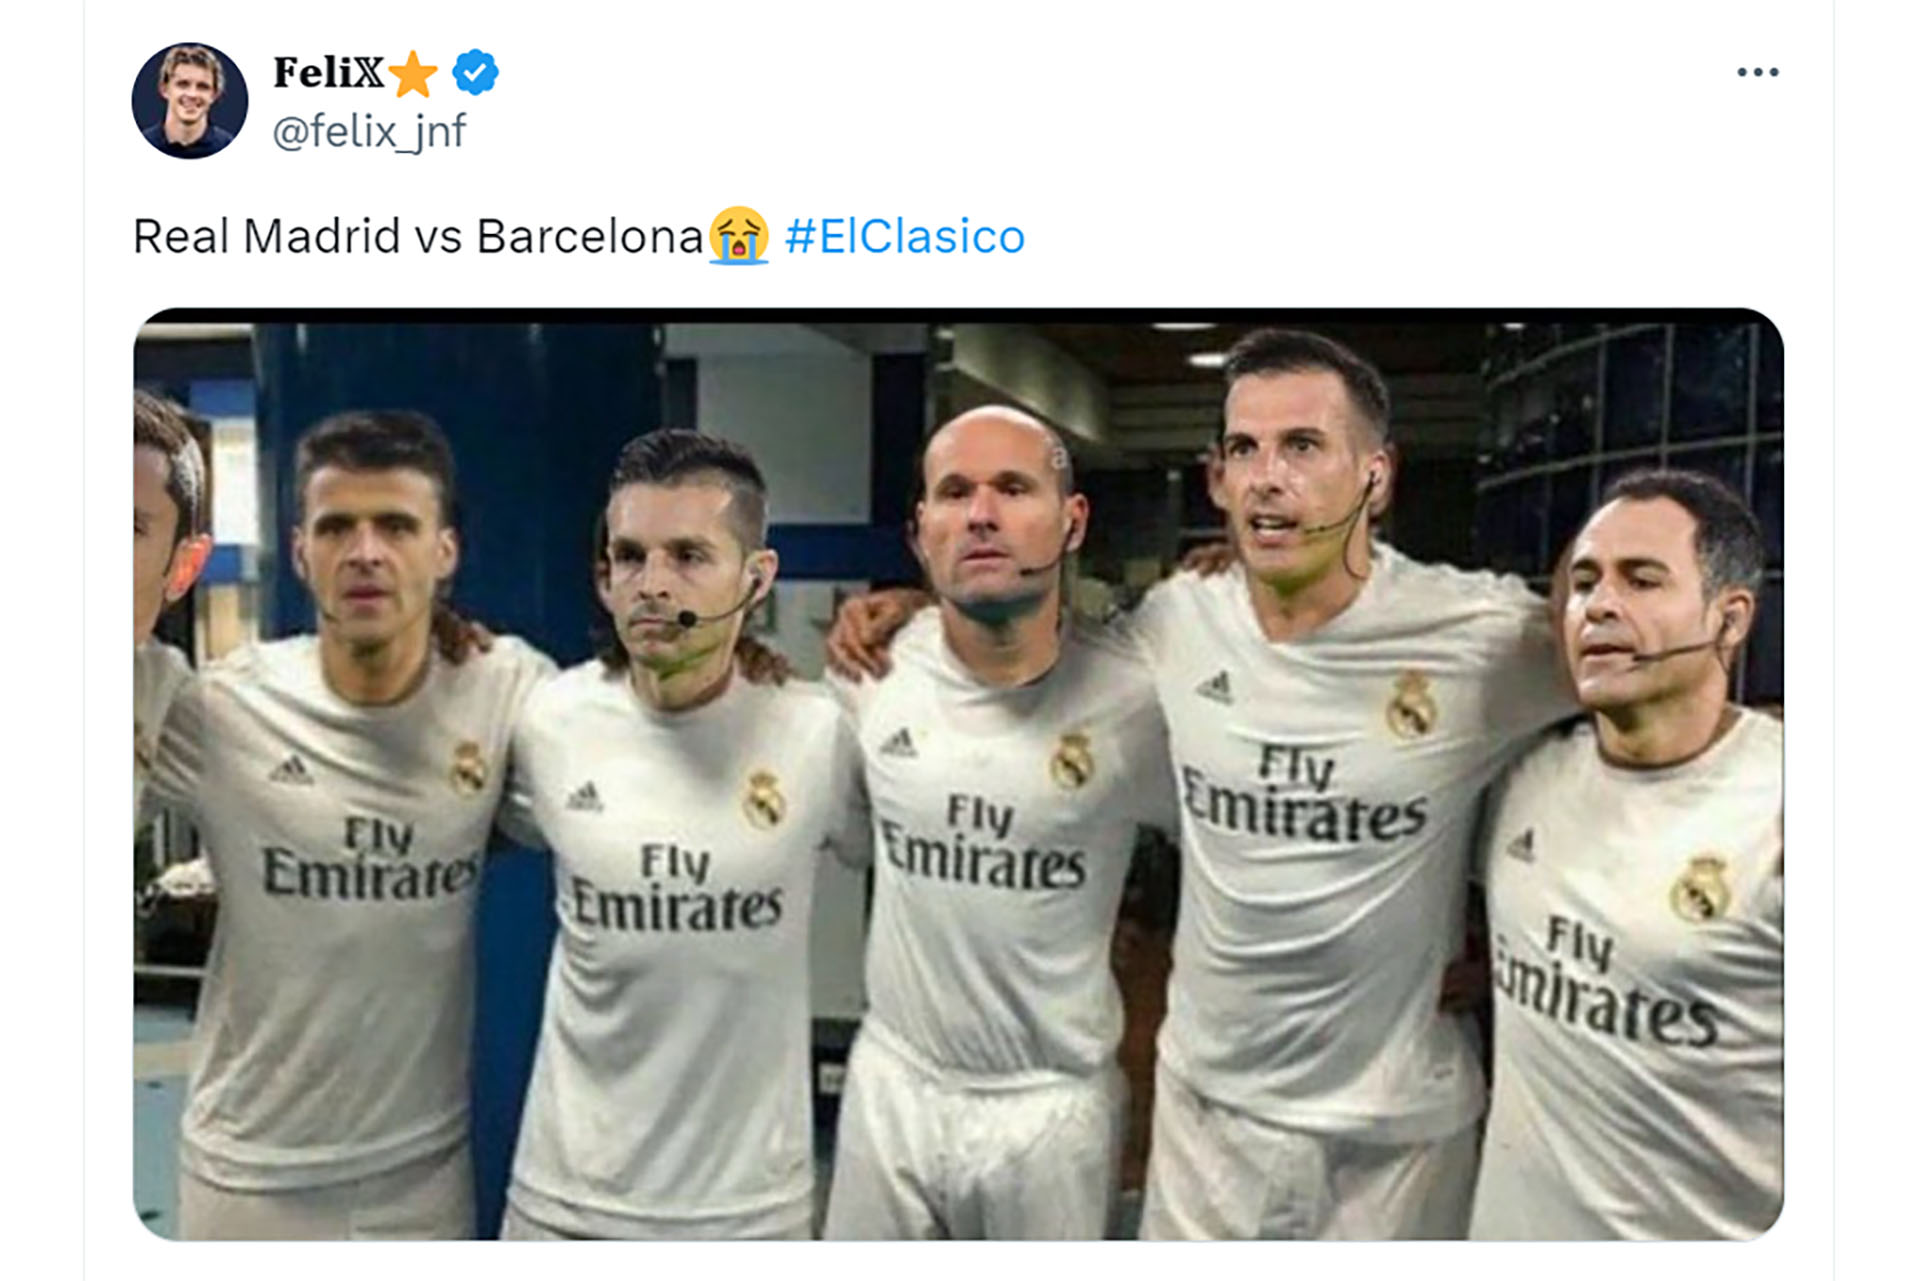 Los árbitros son del Madrid